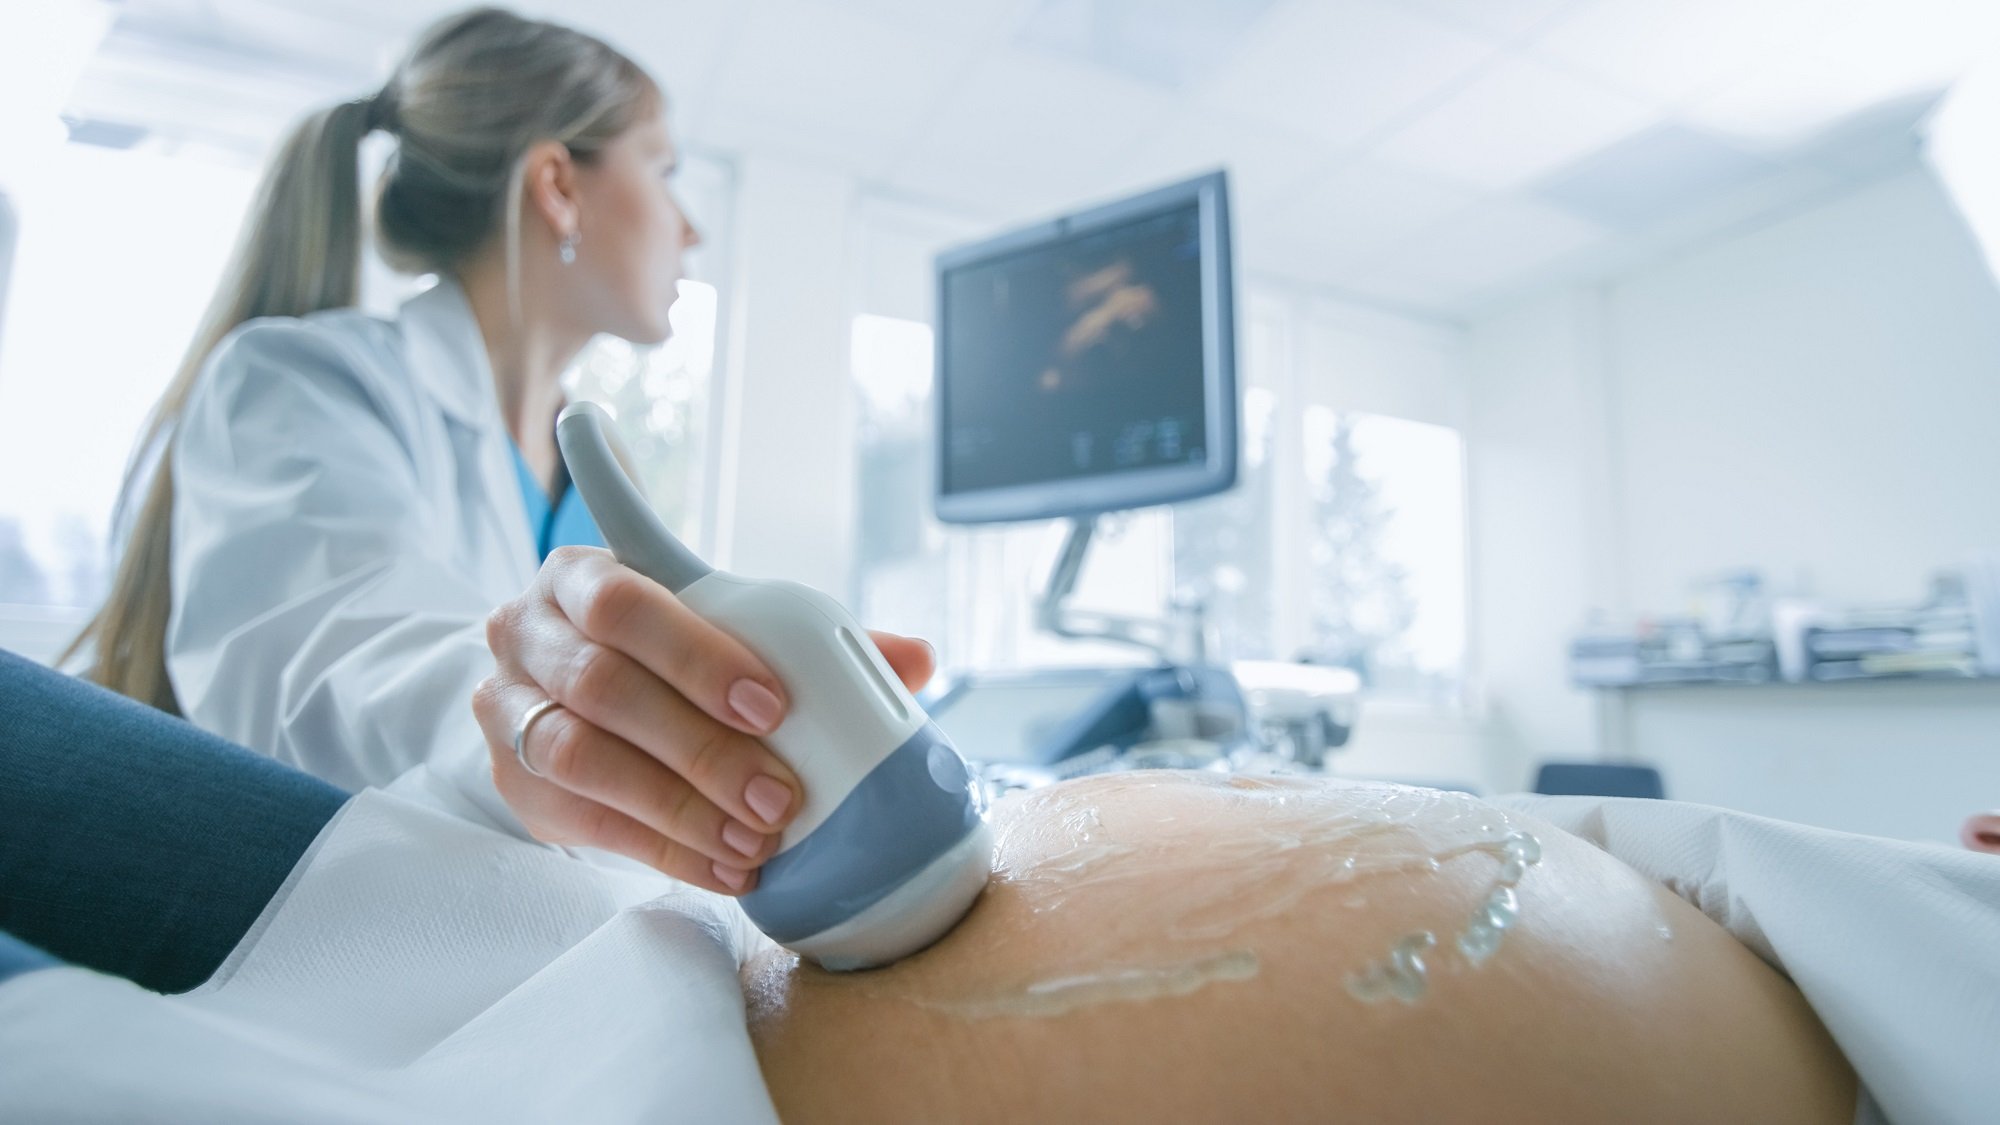 Doctora realiza sonograma a paciente embarazada. | Foto: Shutterstock